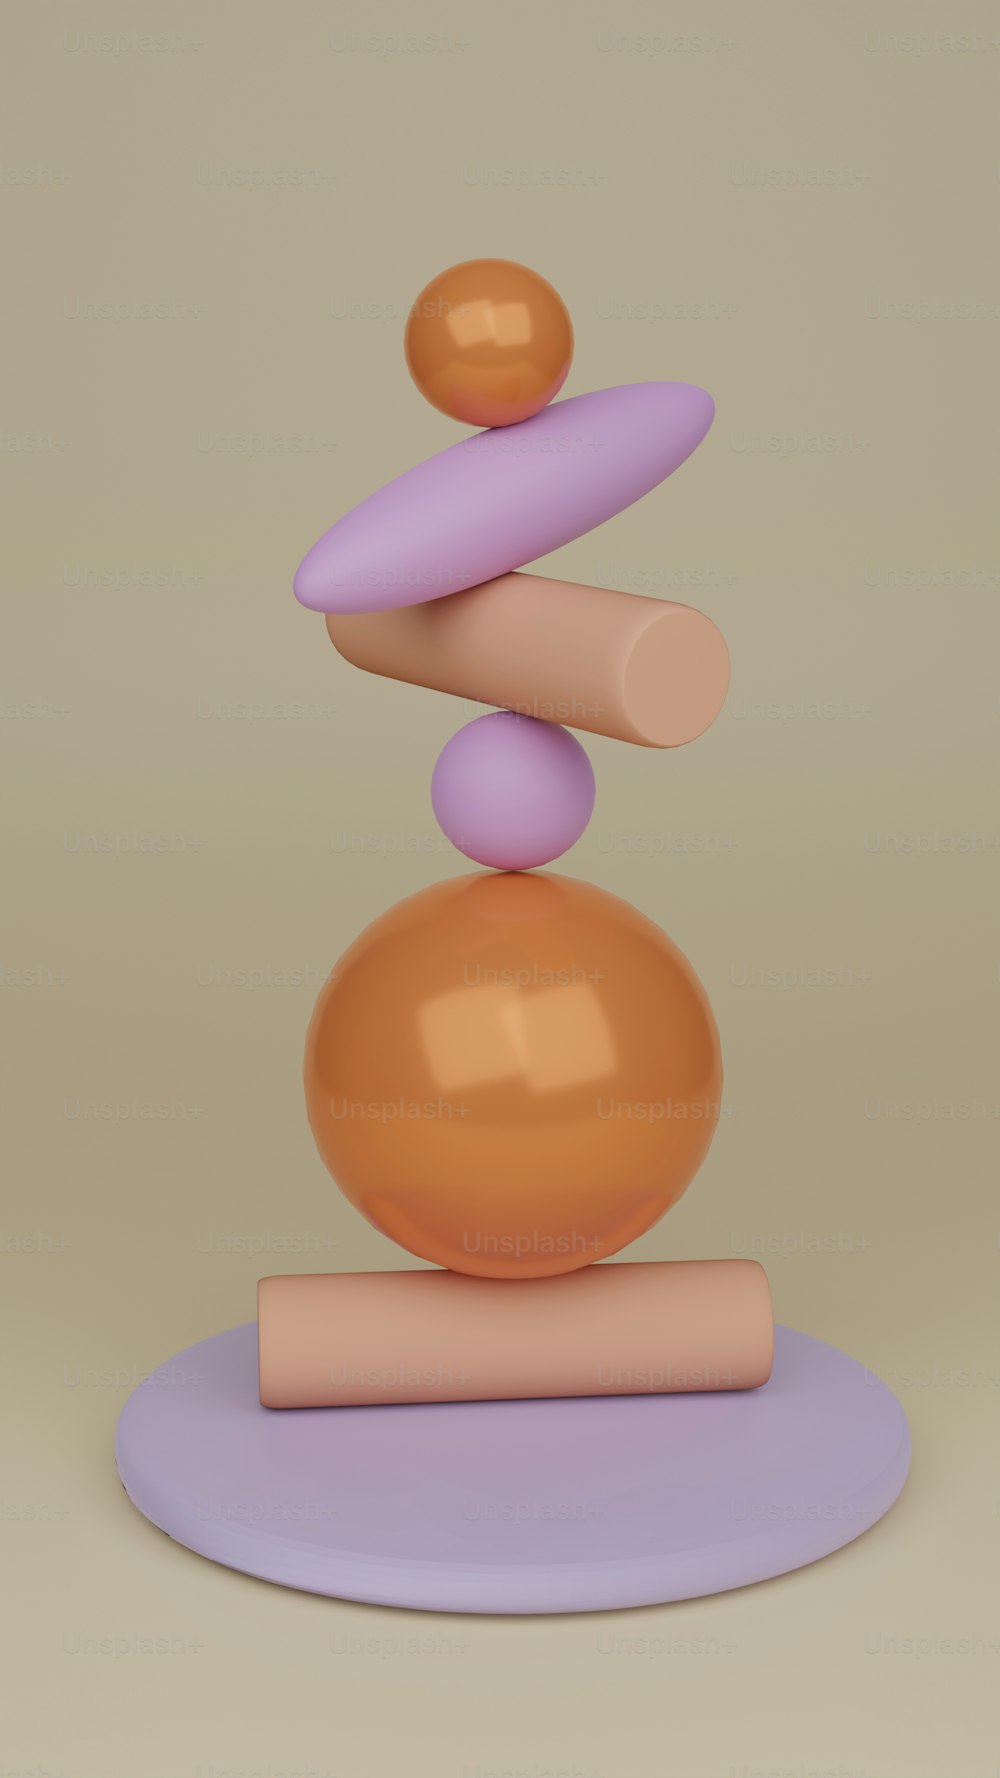 una scultura di una pila di palline una sopra l'altra